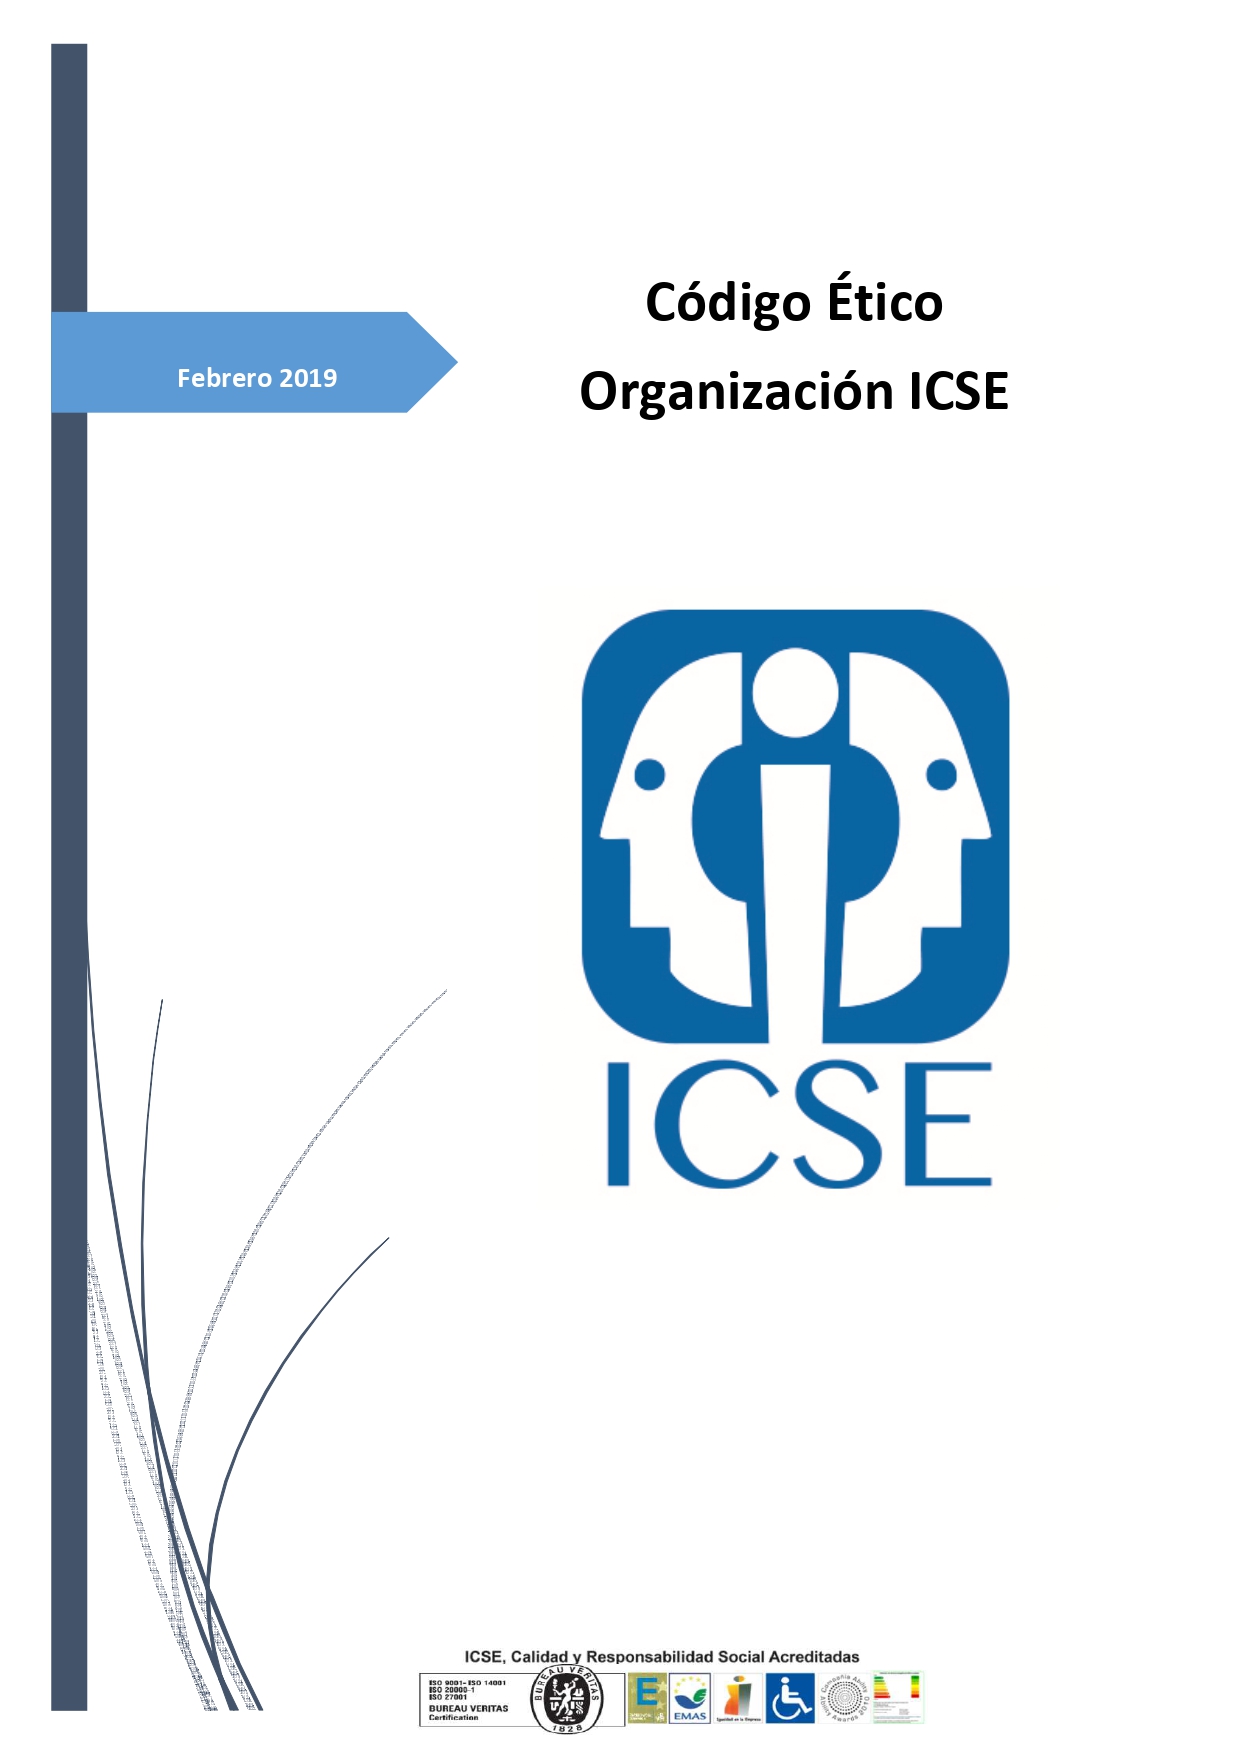 Código Ético ICSE